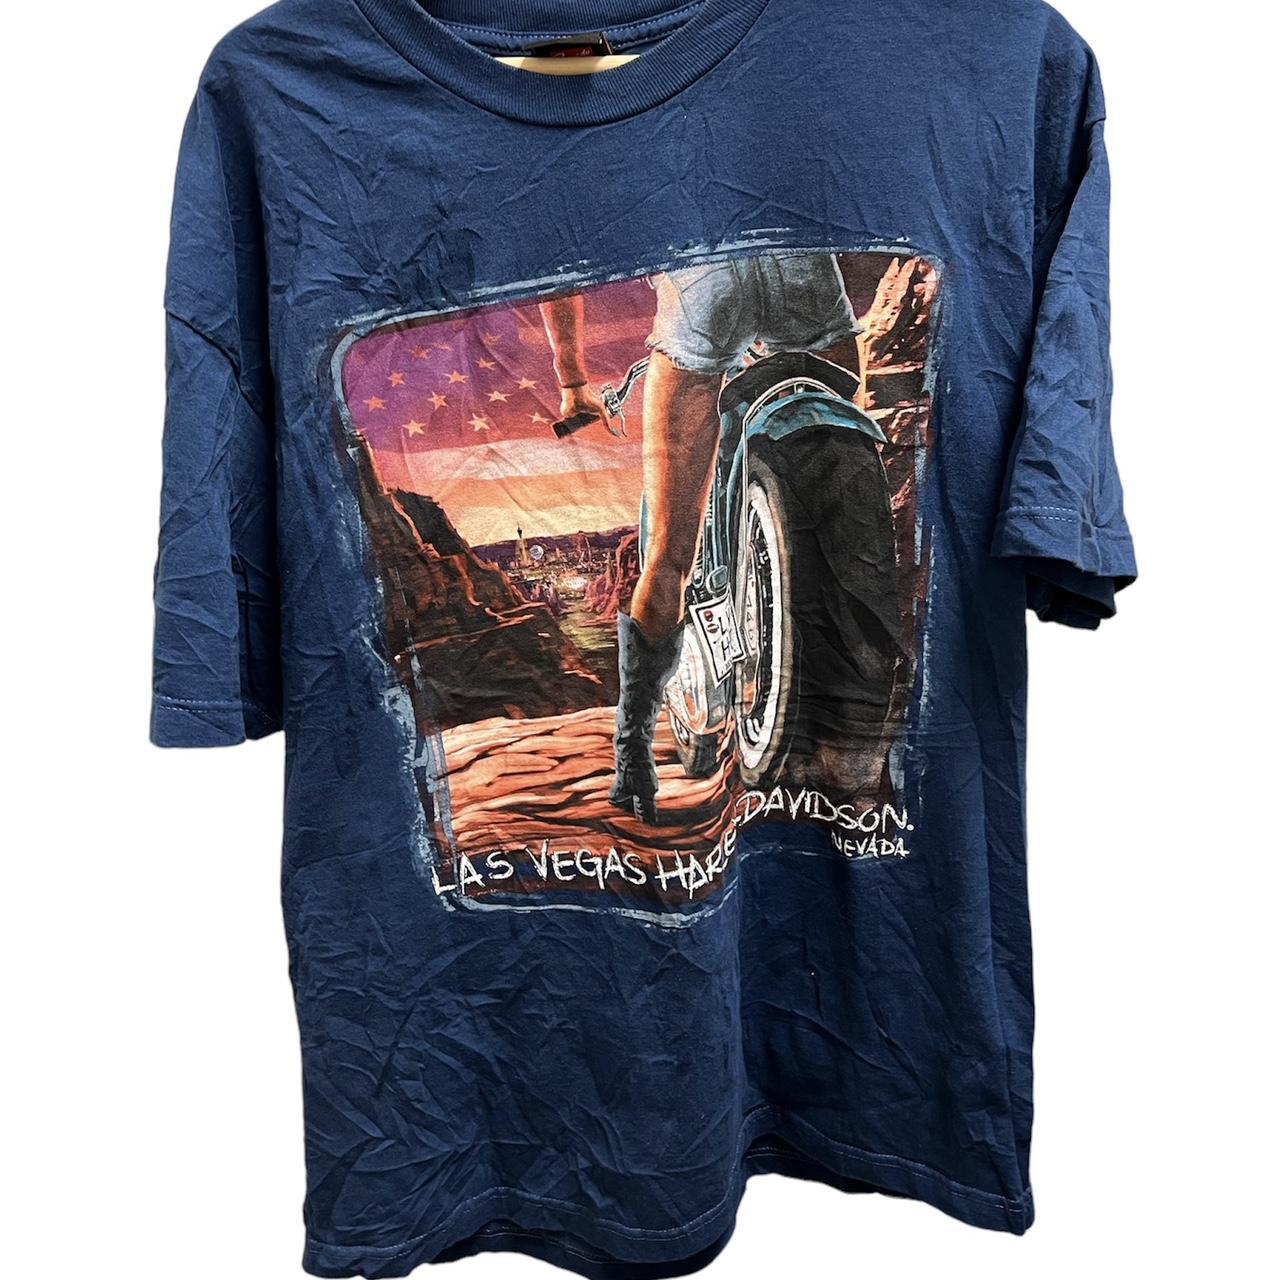 90s Nevada Desert T Shirt - Men's Medium, Women's Large